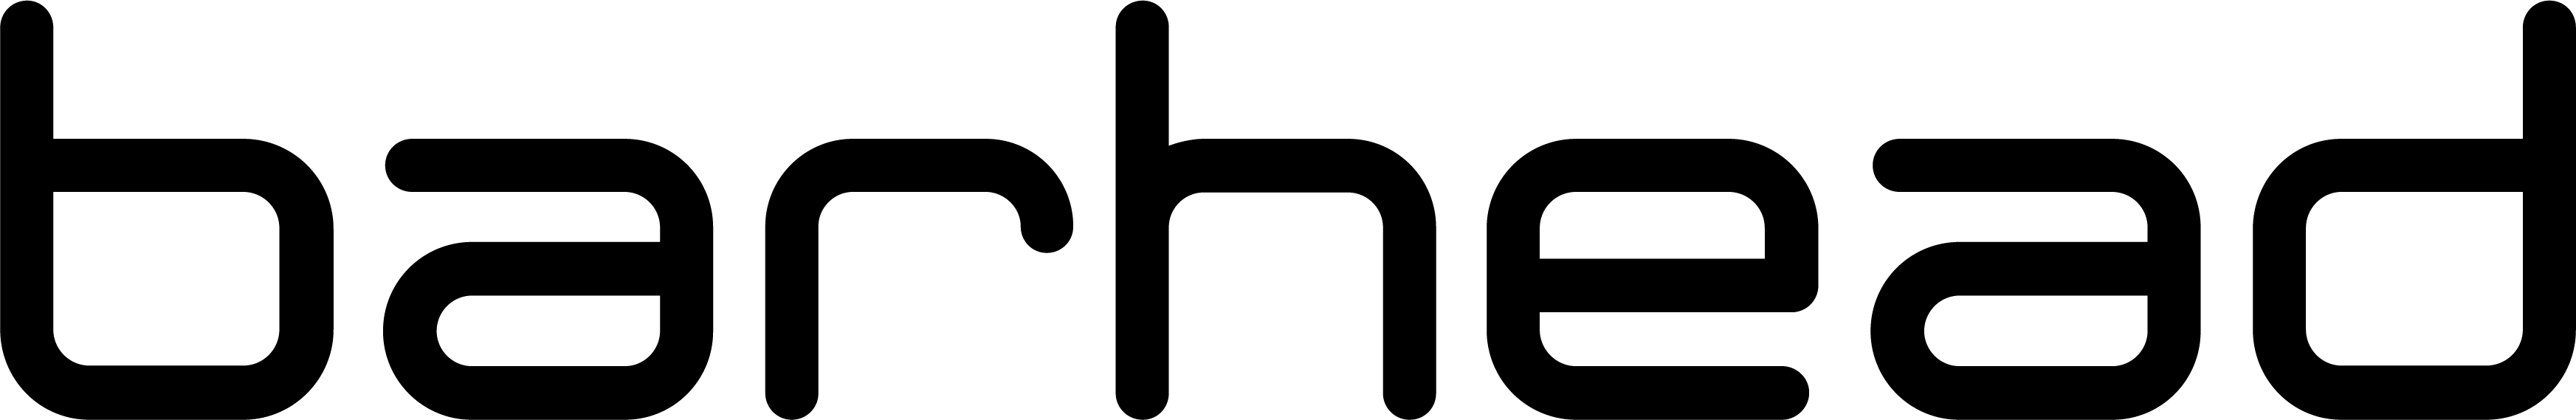 BarHead Logo